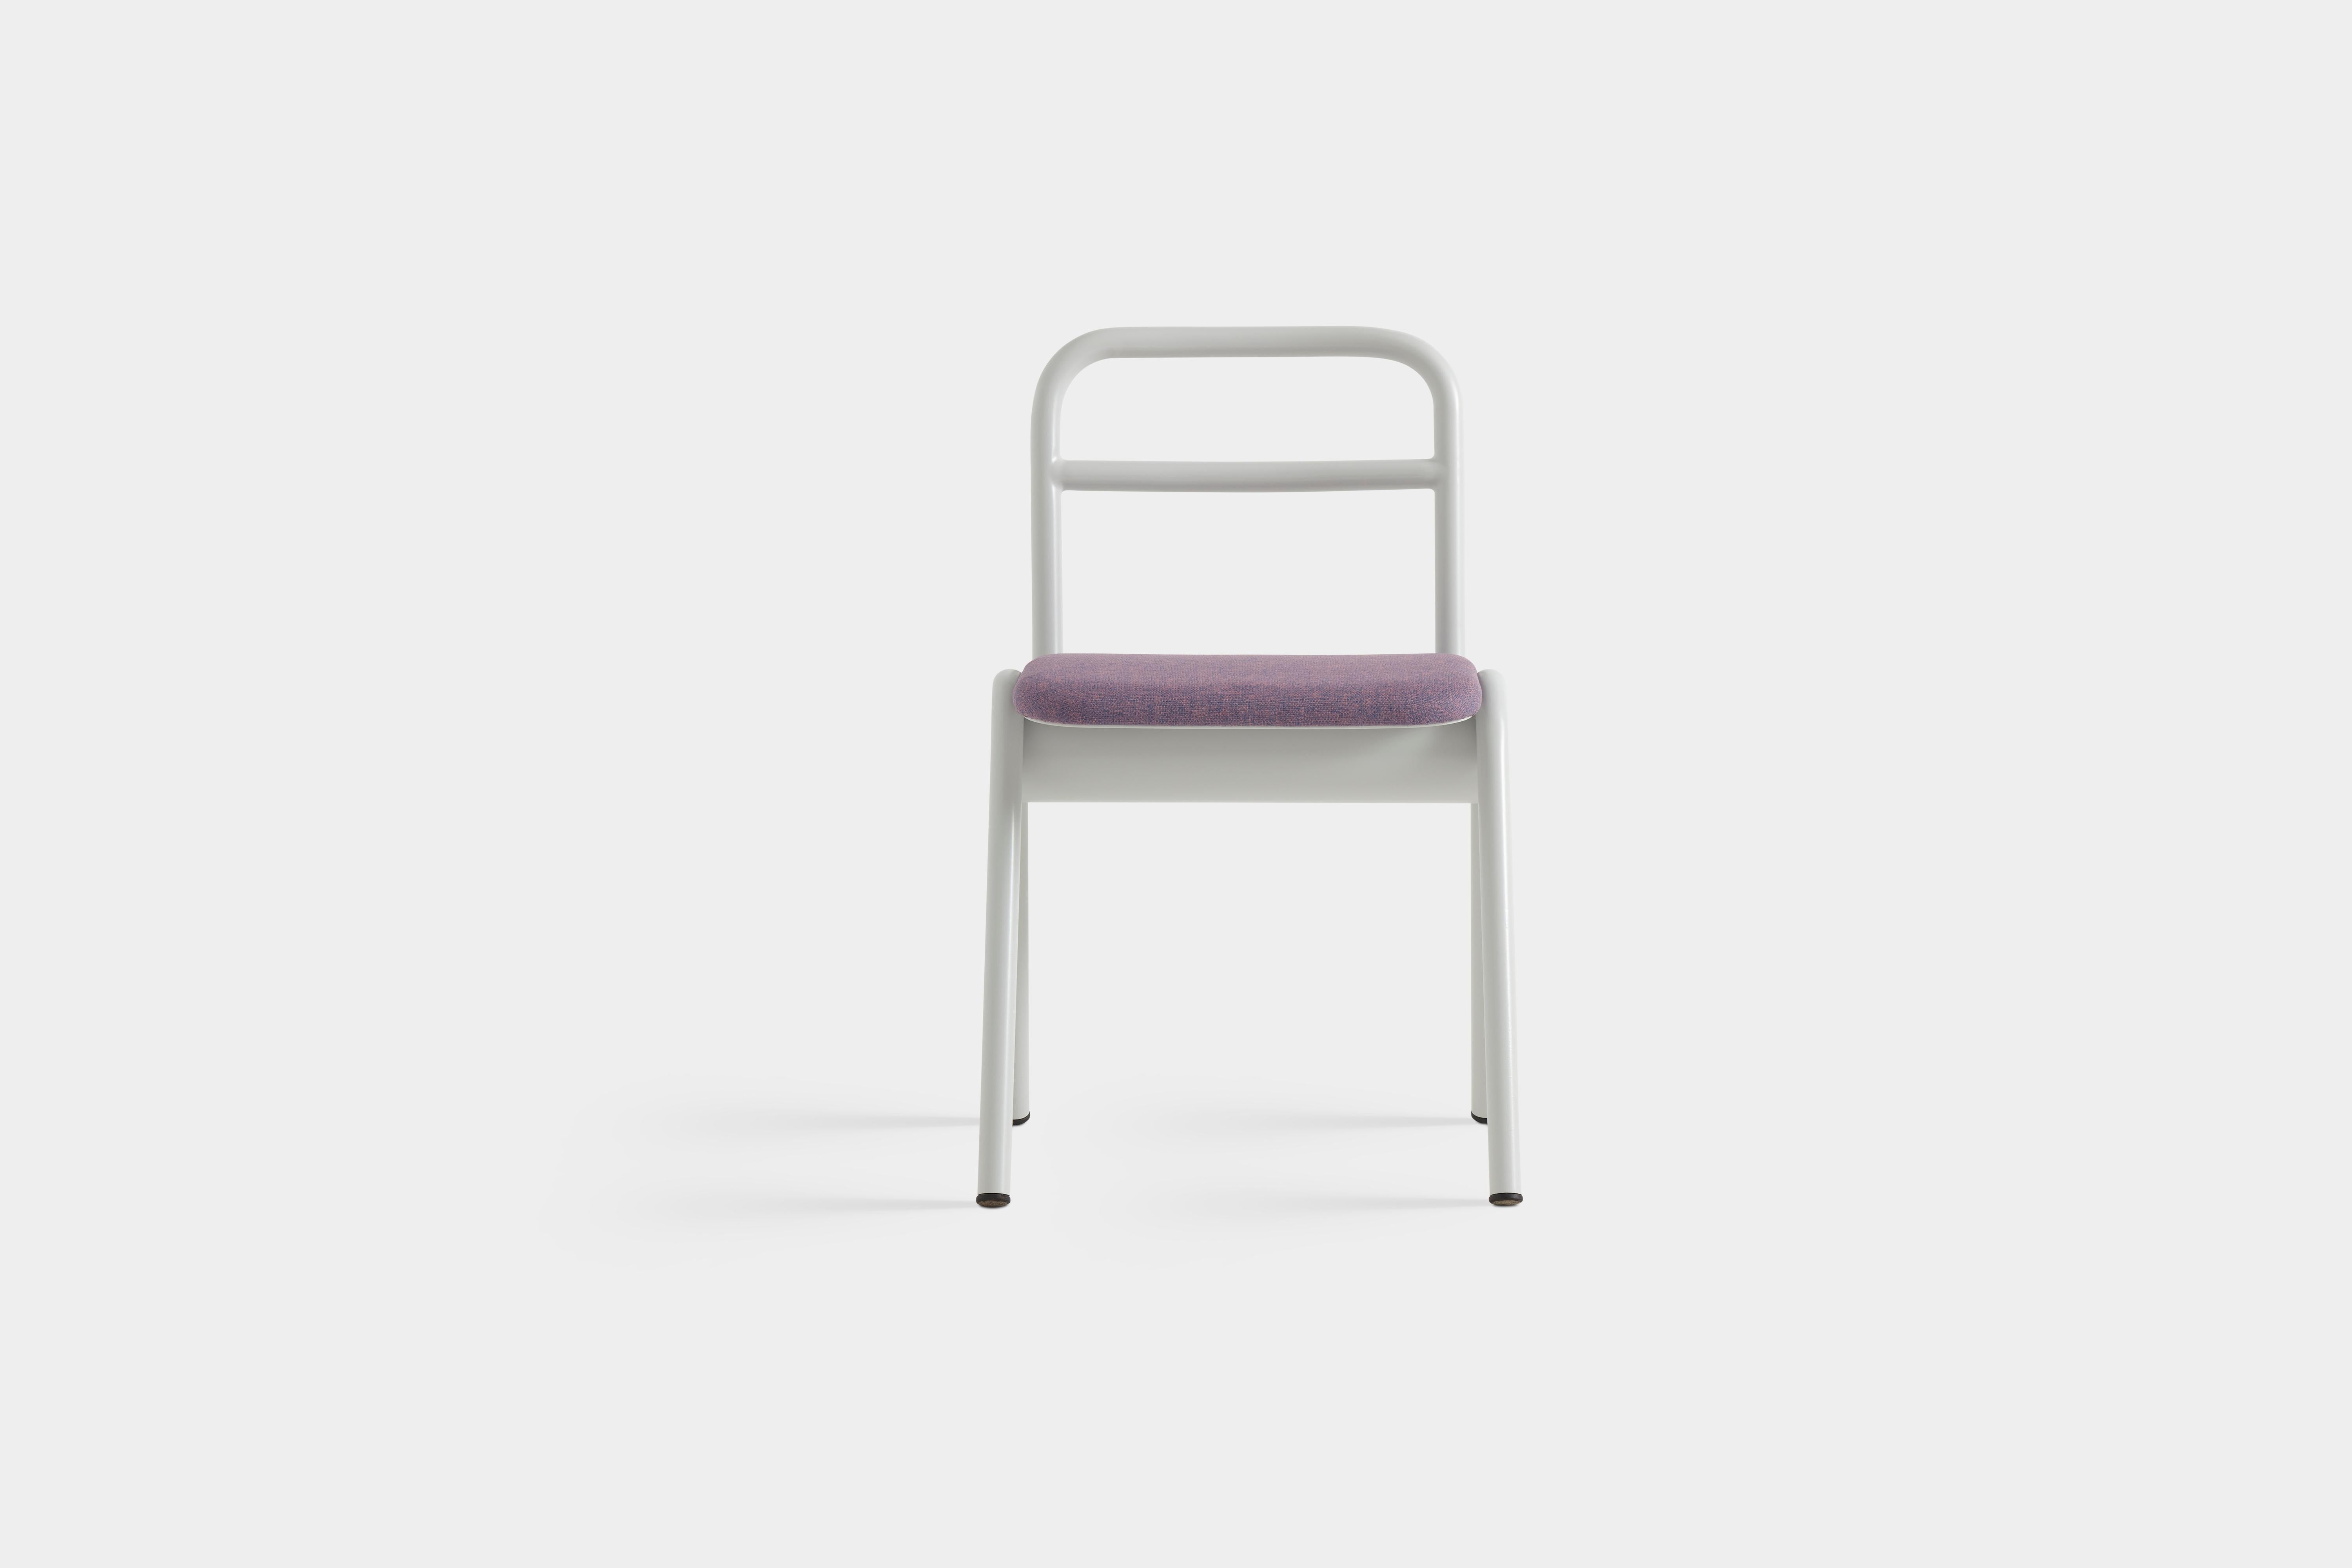 ZUM-Stuhl von Pepe Albargues
Entworfen von Carlos Jiménez 
Abmessungen: T 50 x B 49 x T 80 cm.
MATERIALIEN: Aluminium, Schaumstoff, Sperrholz und Polstermaterial.

Gebogener Sitz aus Sperrholz. Aluminiumstruktur in jeder RAL-Farbe lackiert.